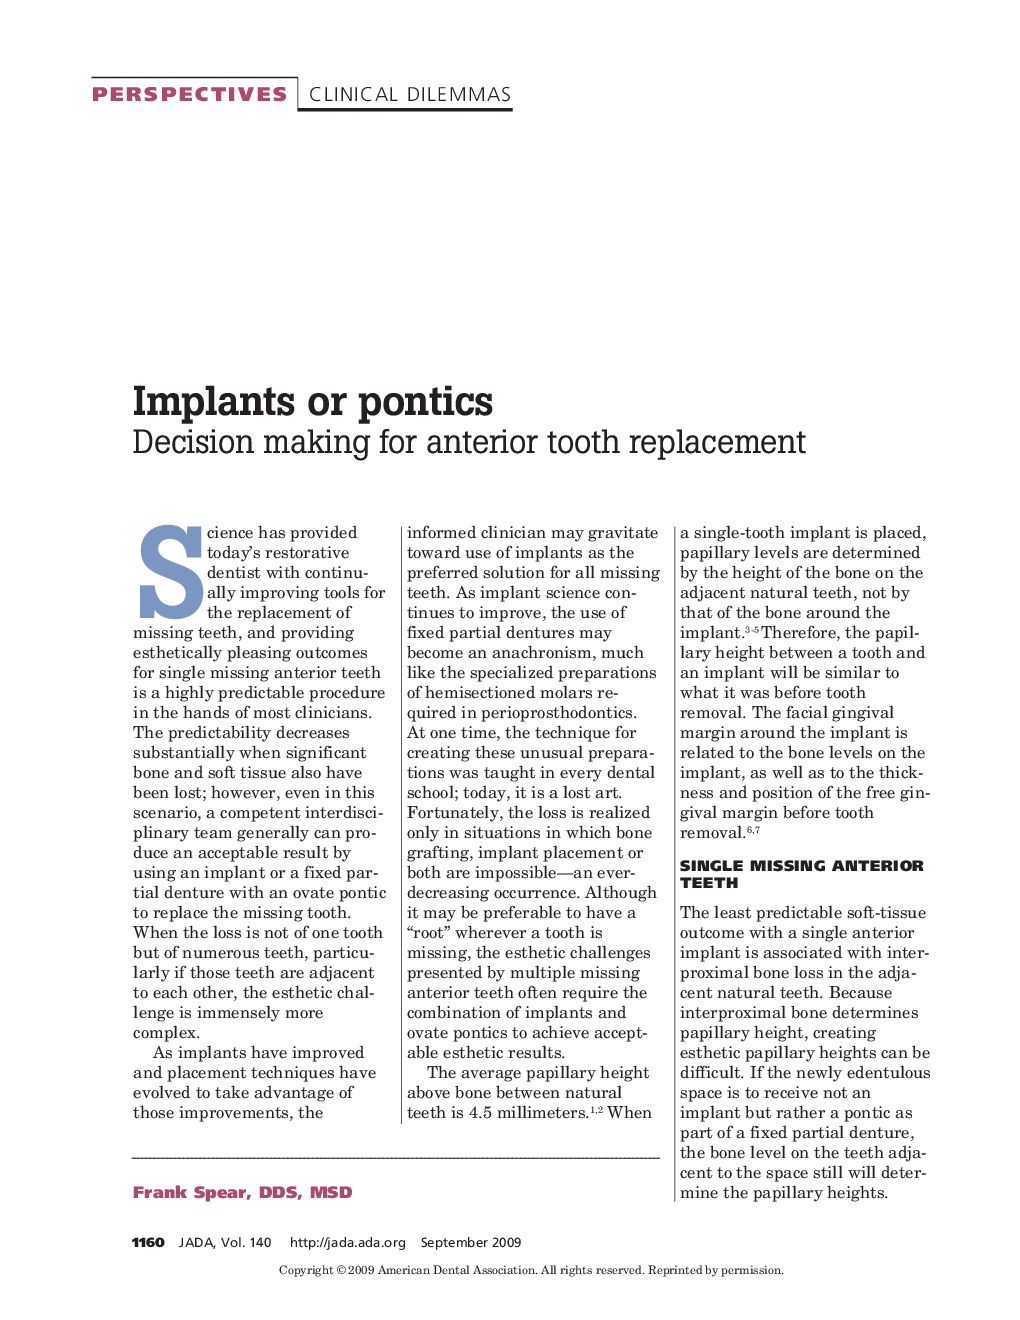 Implants or Pontics